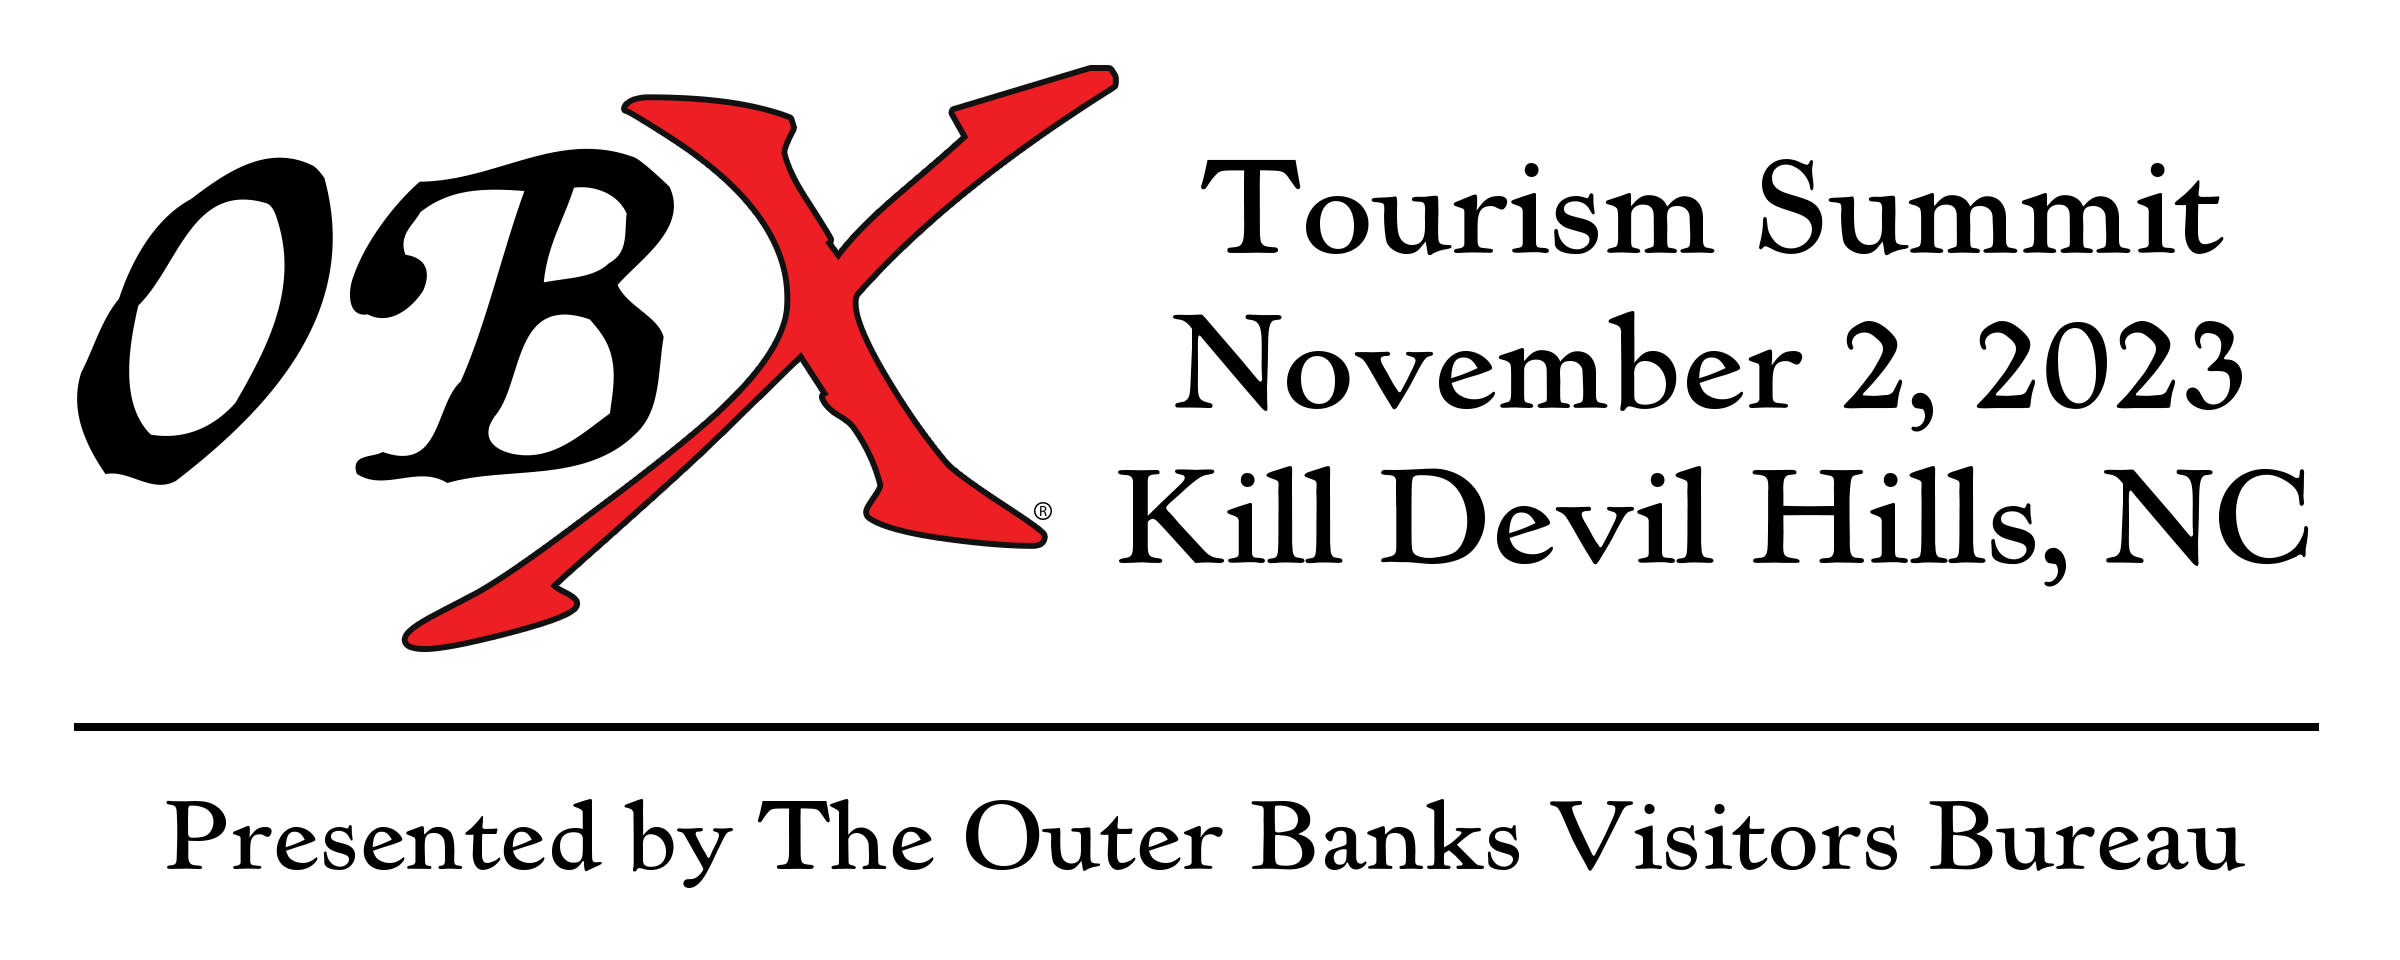 OBX Tourism Summit